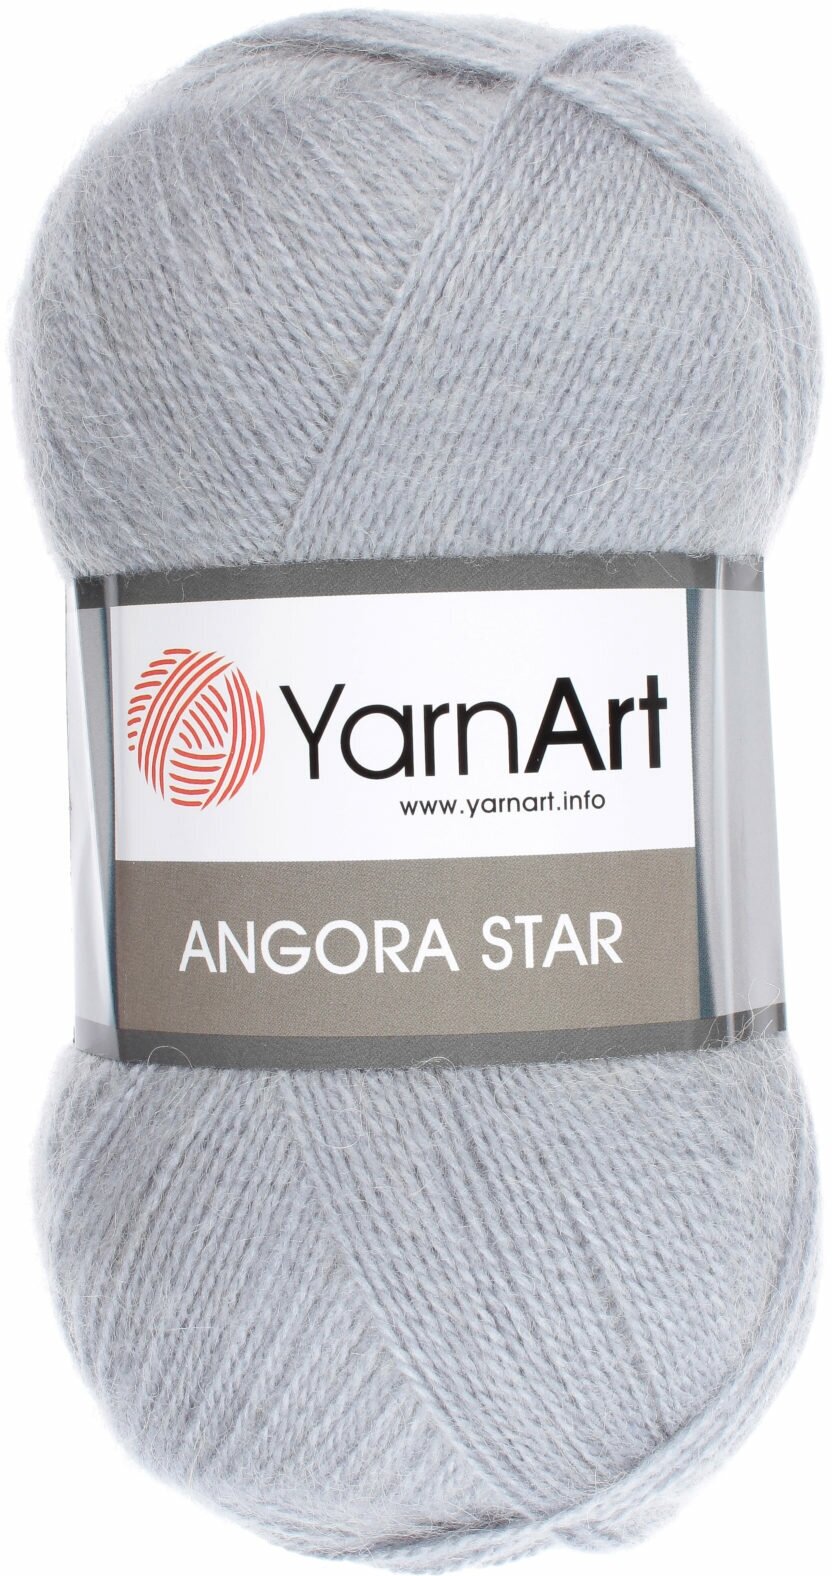 Пряжа Yarnart Angora Star серо-голубой (3072), 20%шерсть/80%акрил, 500м, 100г, 1шт